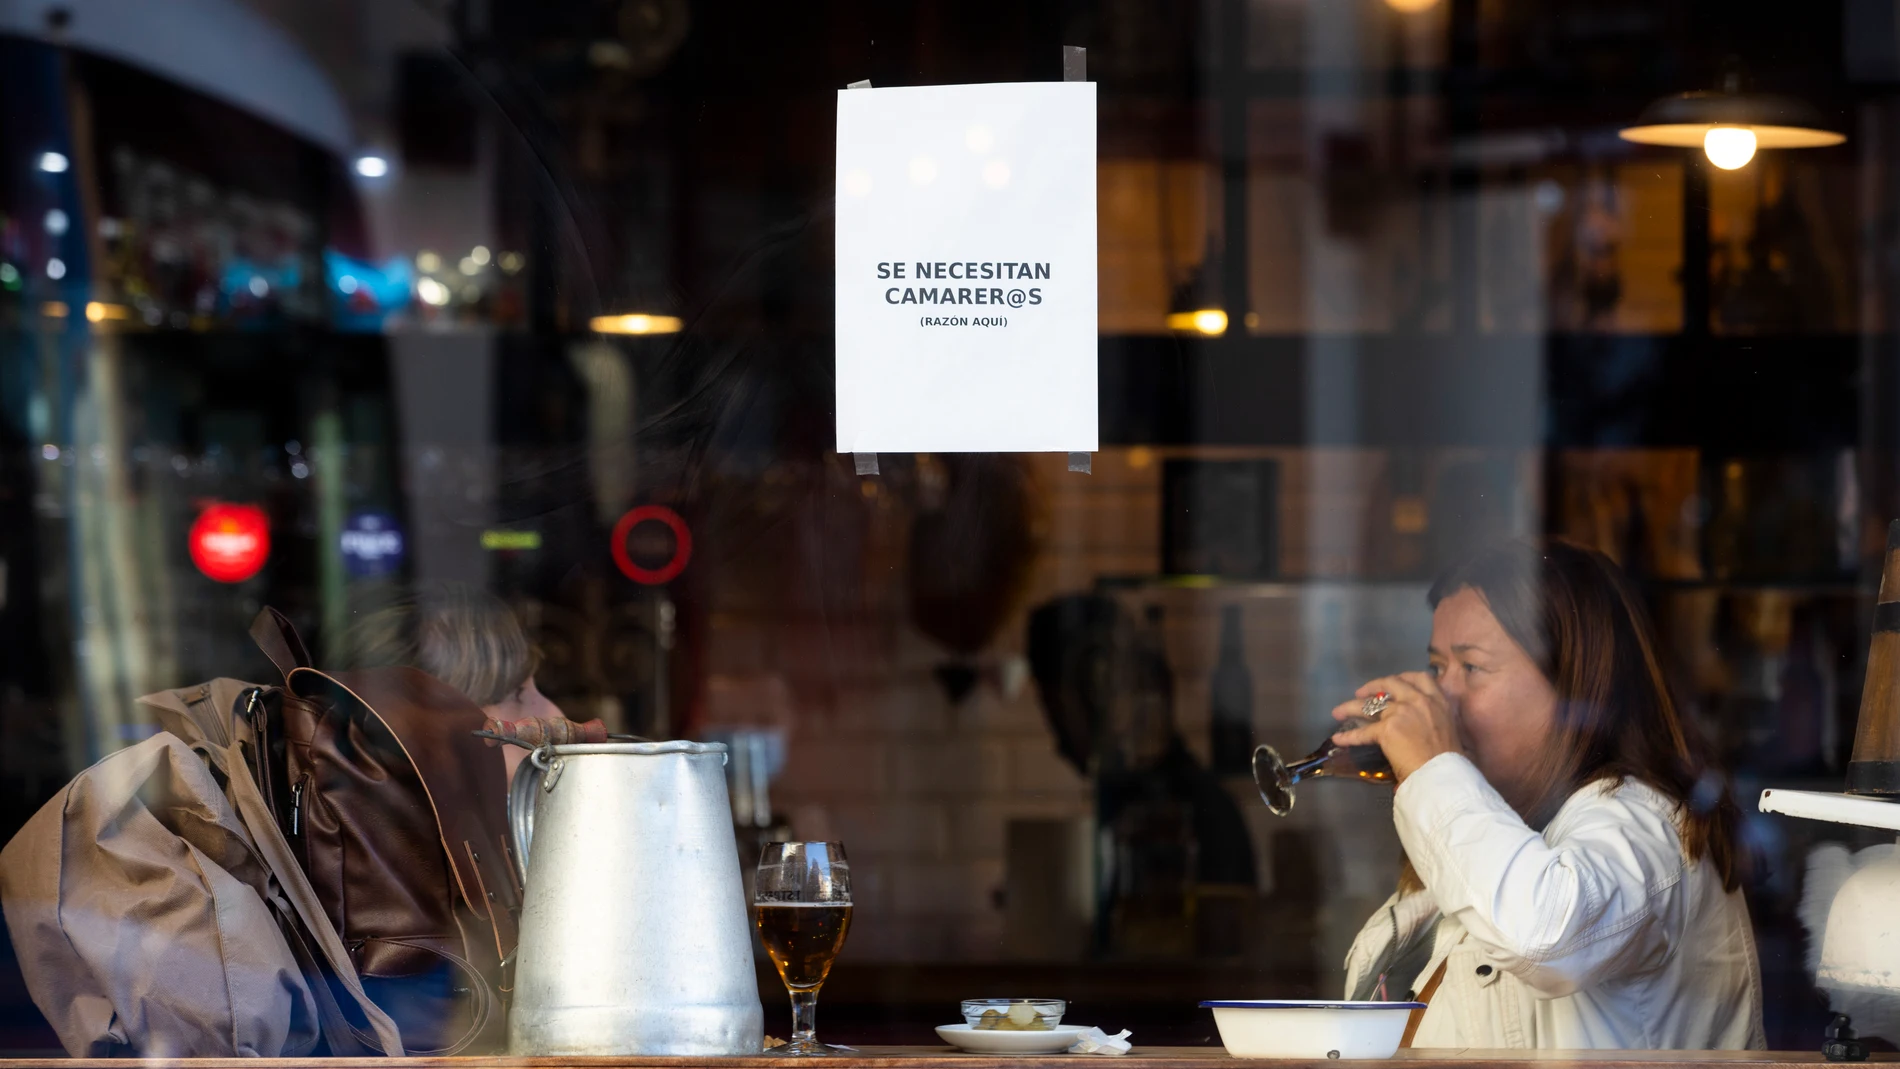 Imagen del escaparte de un bar en el que cuelga un cartel que reza "Se necesitan camareros".